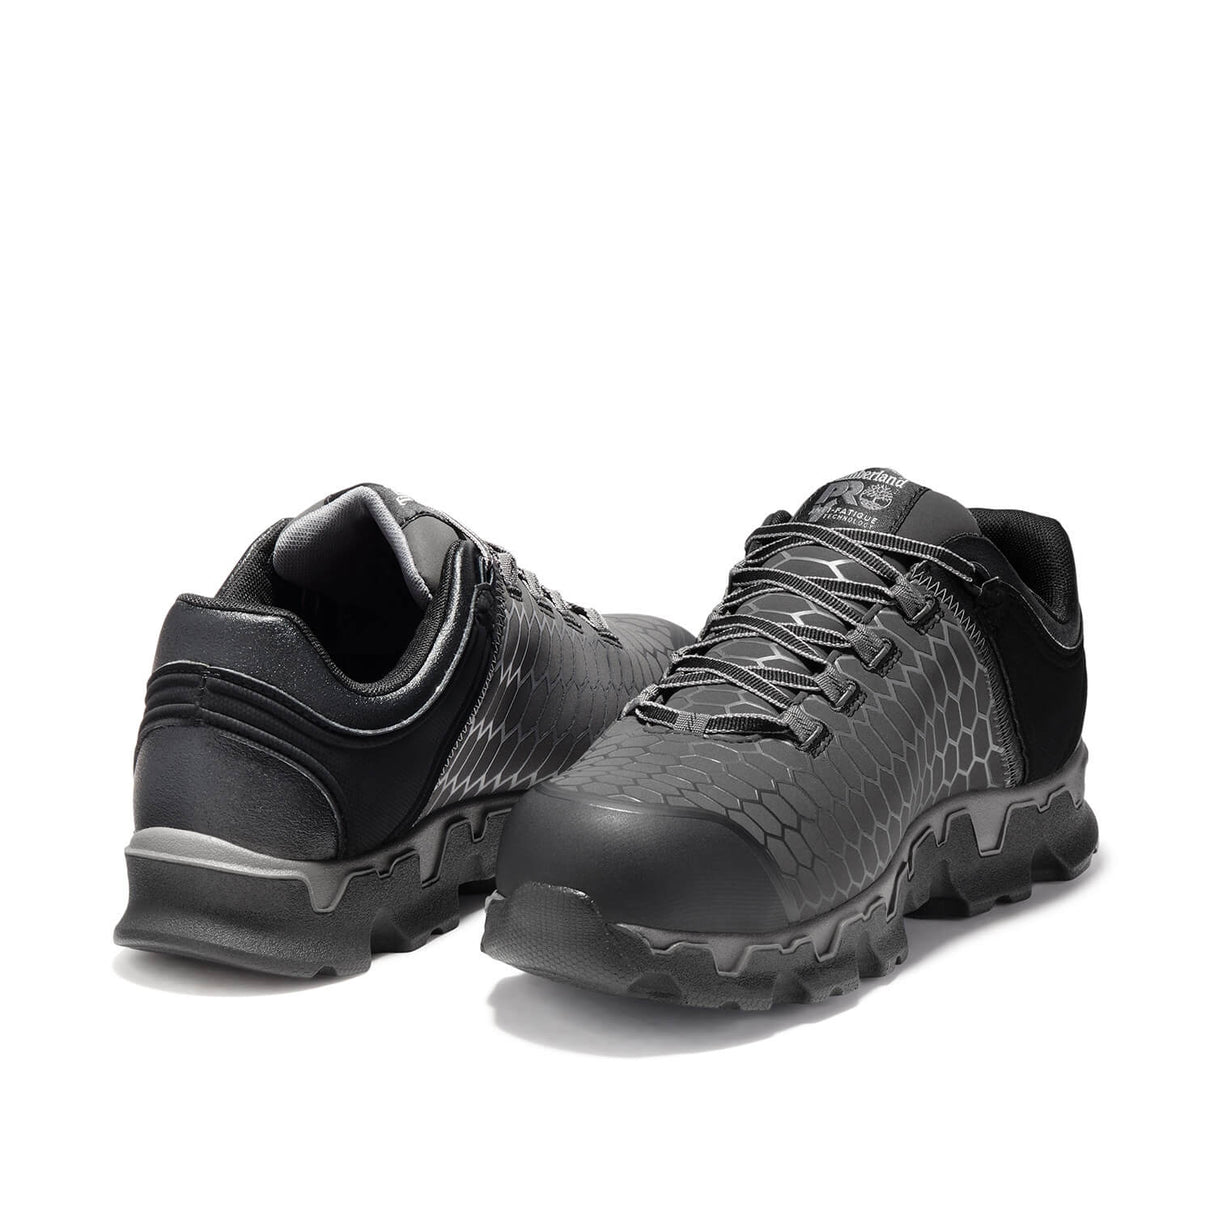 Timberland PRO-Powertrain Sport Men's Alloy-Toe Shoe Black/Grey-Steel Toes-4